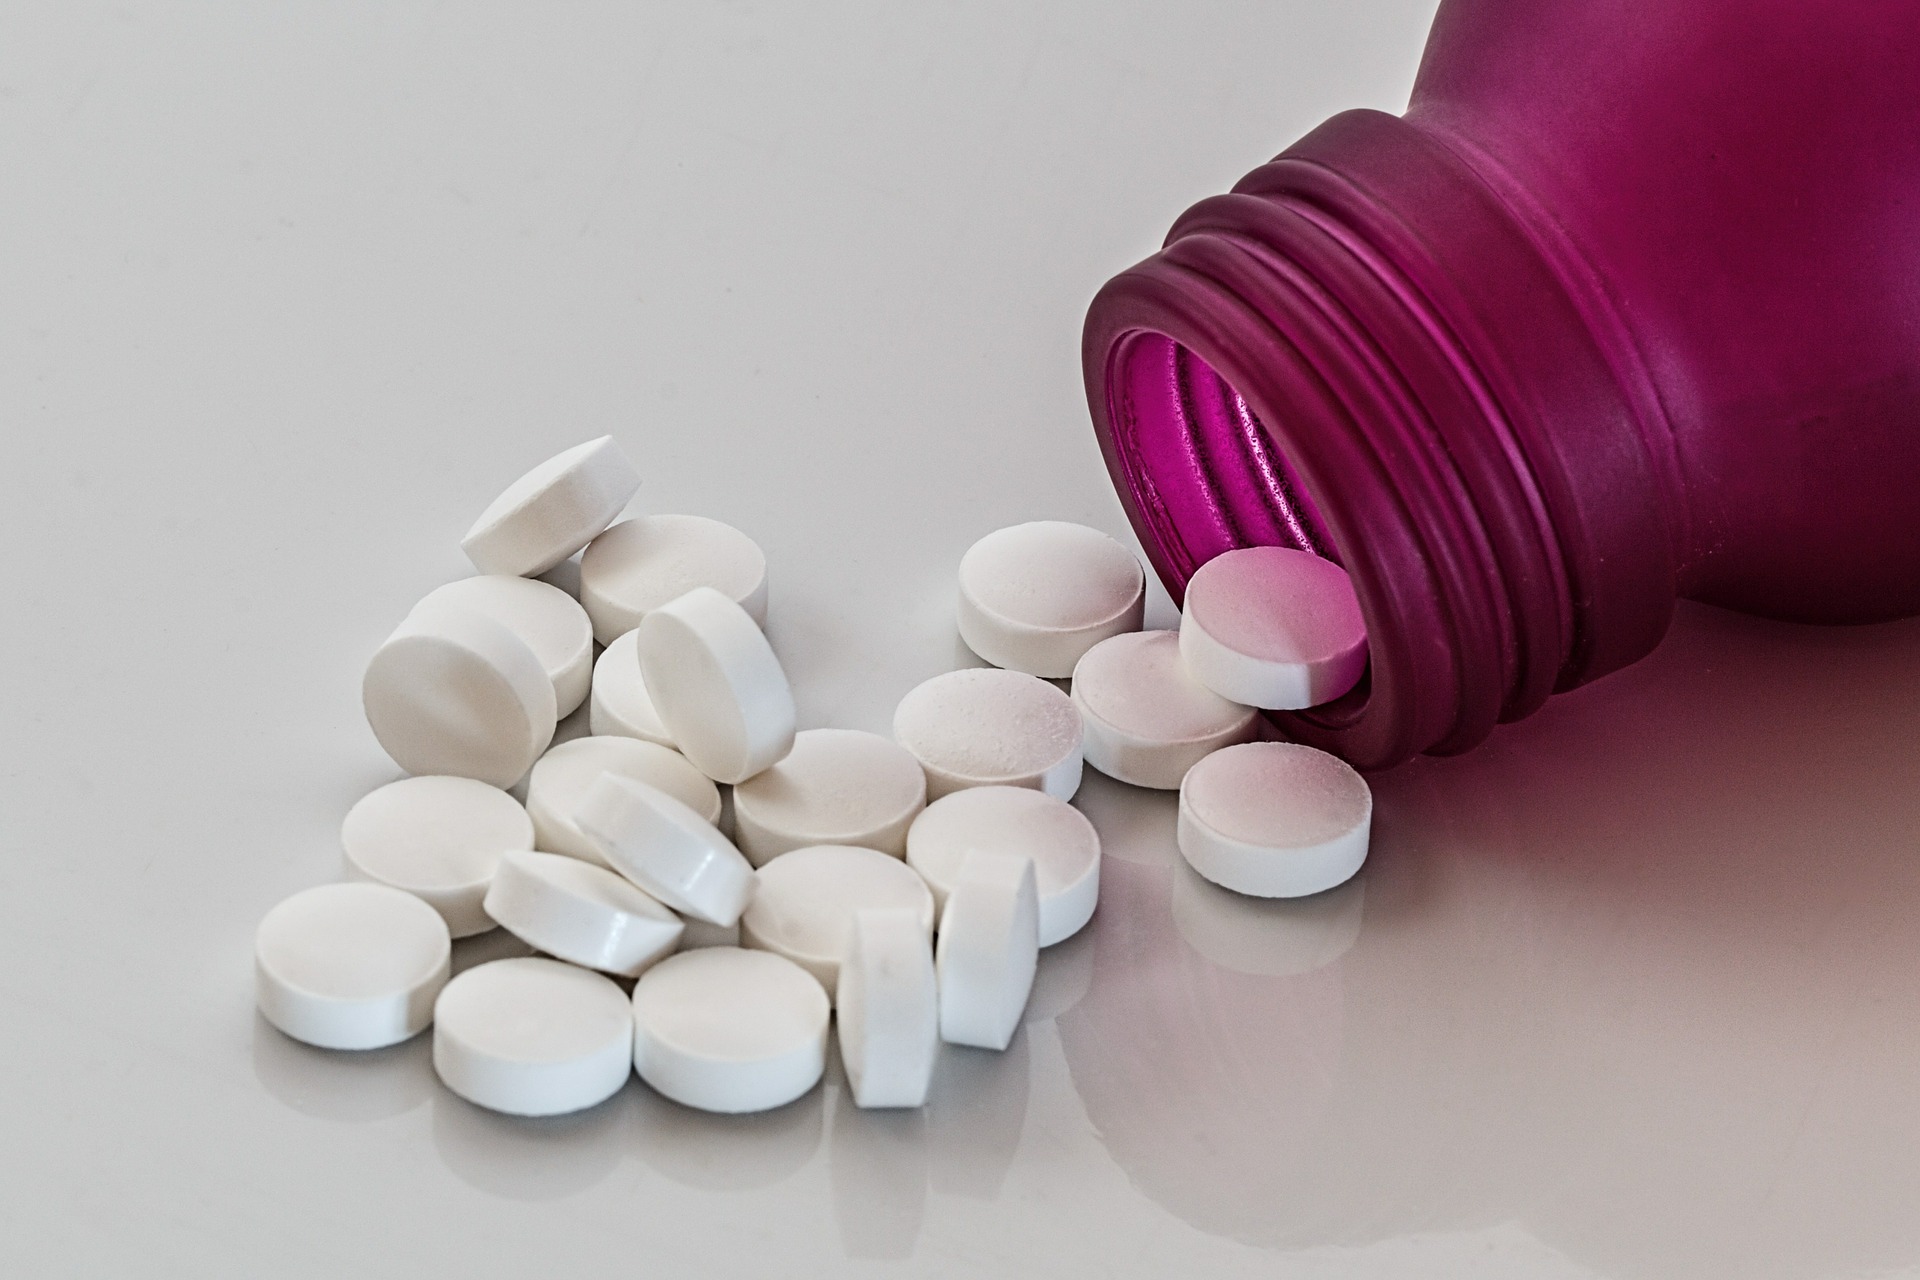 Farmaci Senza Obbligo Di Prescrizione E Ruolo Del Farmacista Farmacia News